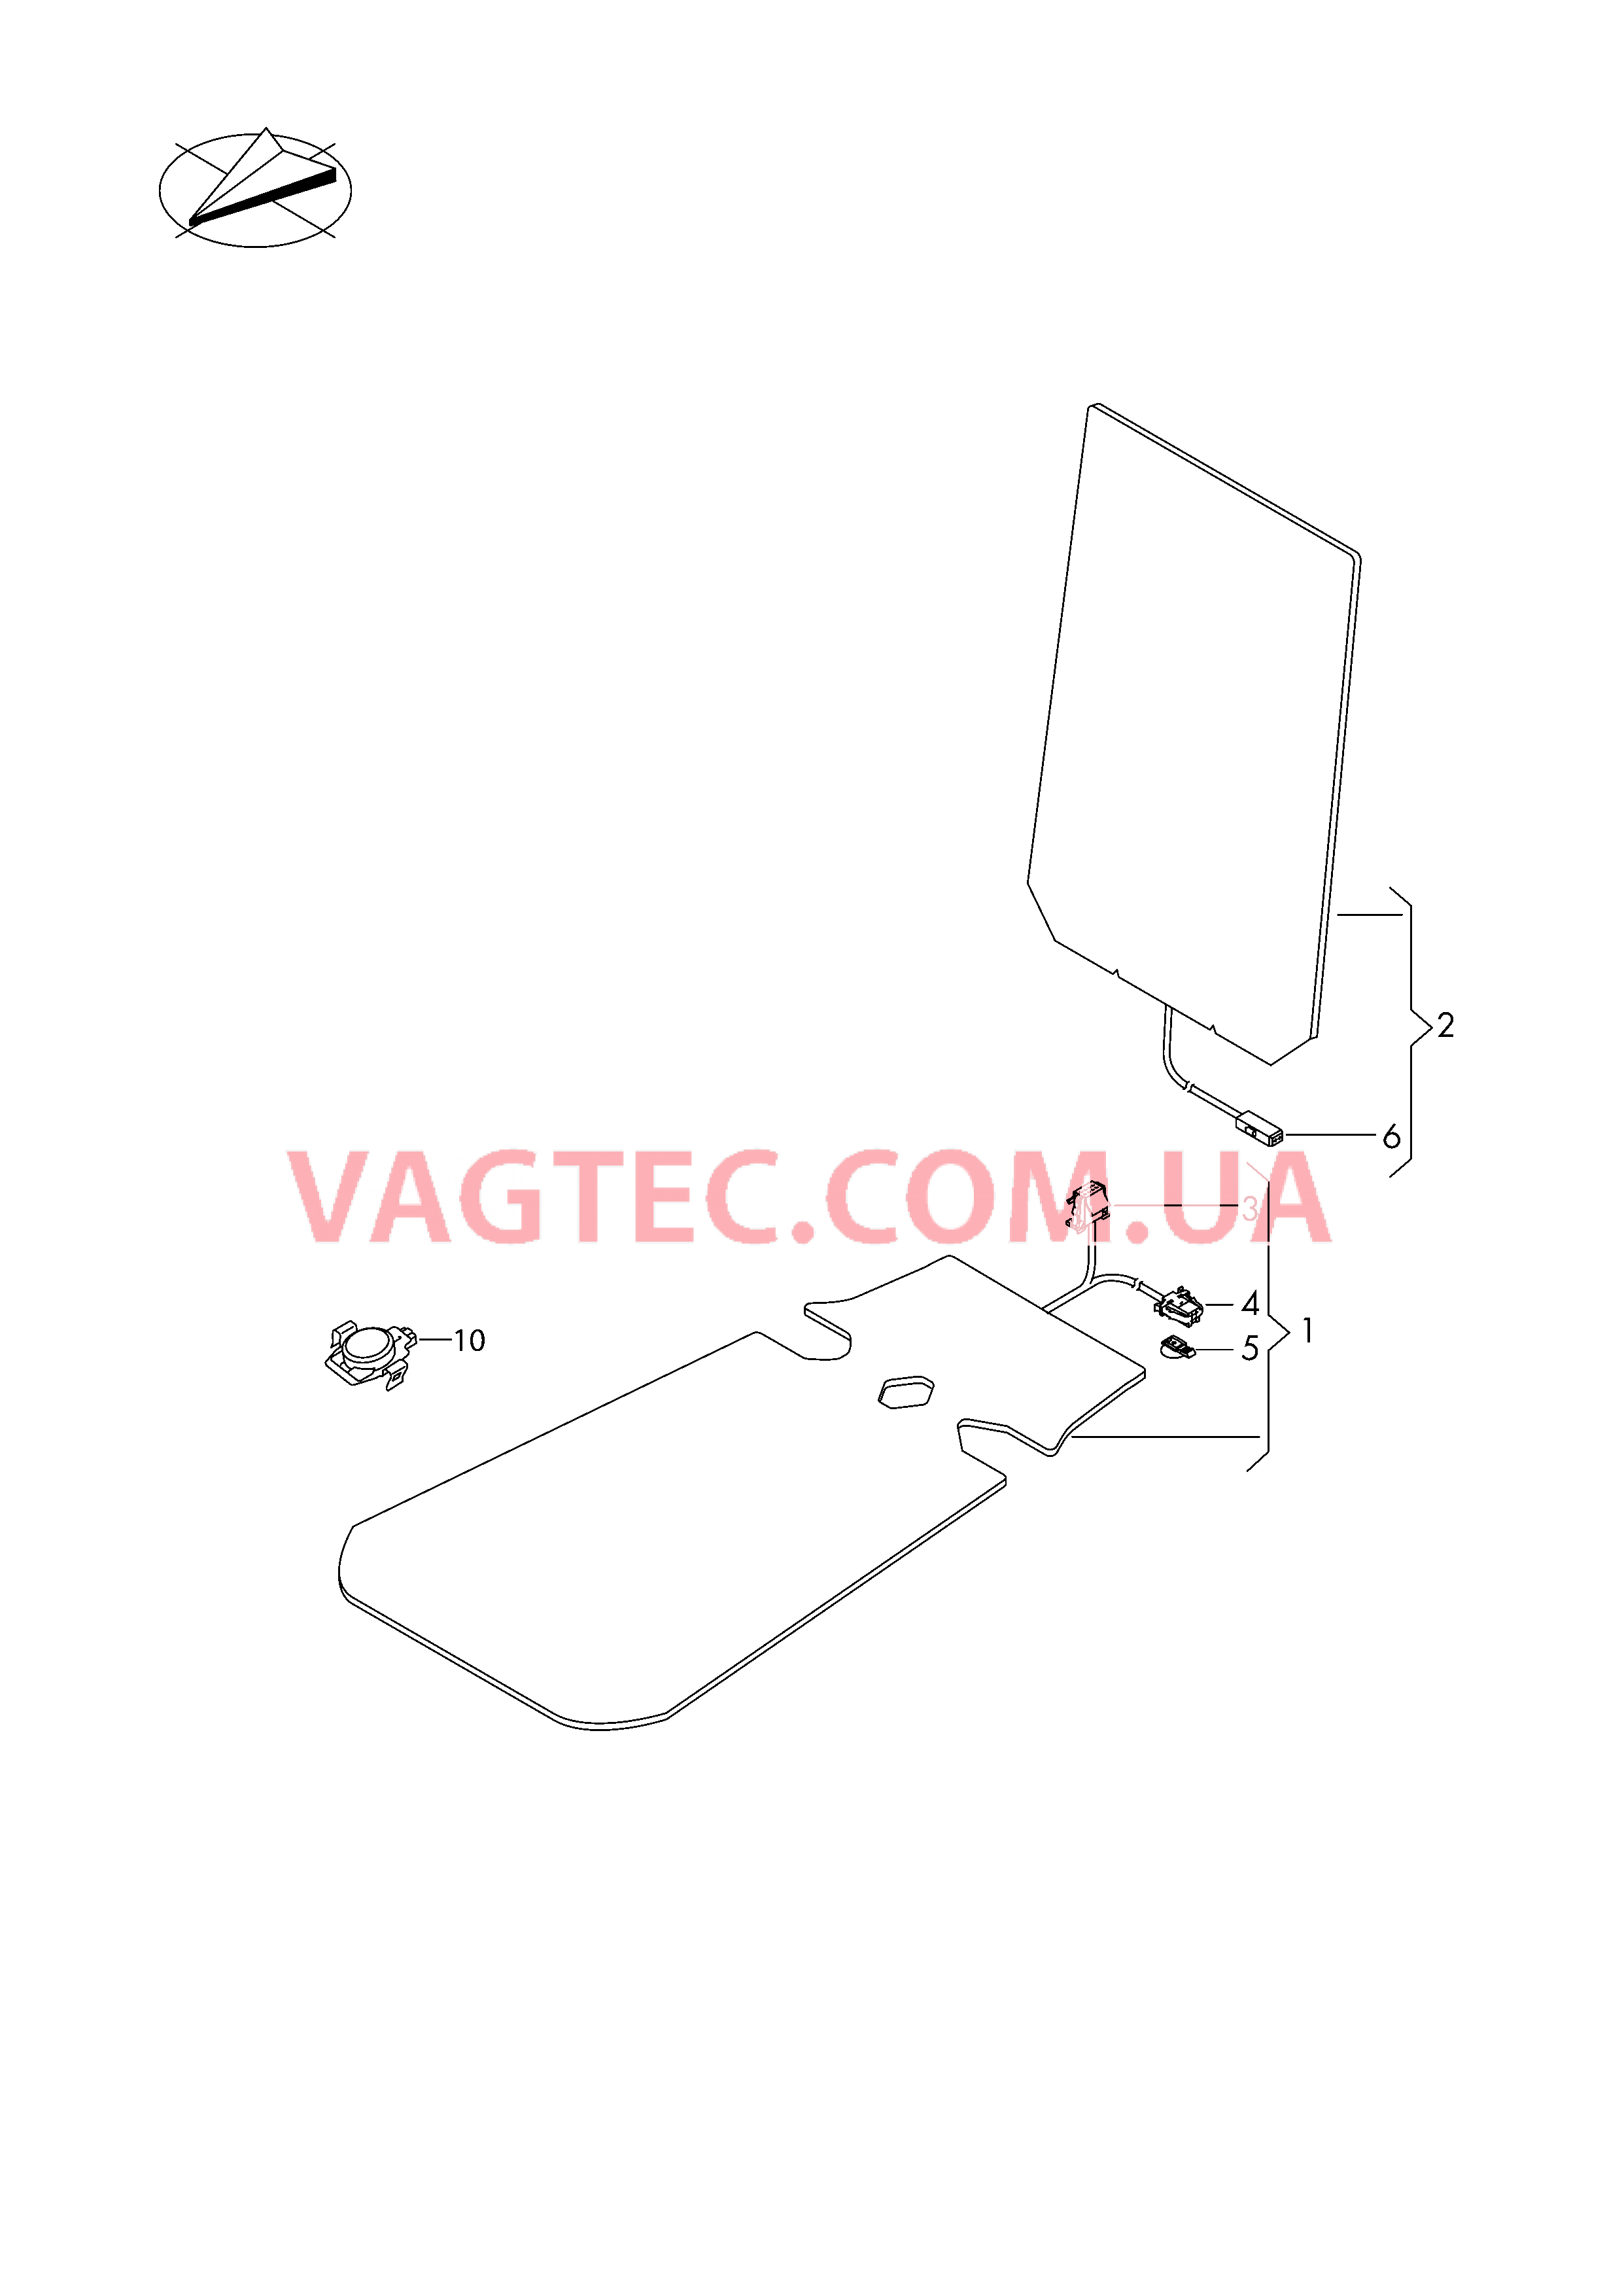 Электродетали для обогрева подушки и спинки сиденья  Вставка распознавания занятости сиденья  для SKODA Kodiaq 2017